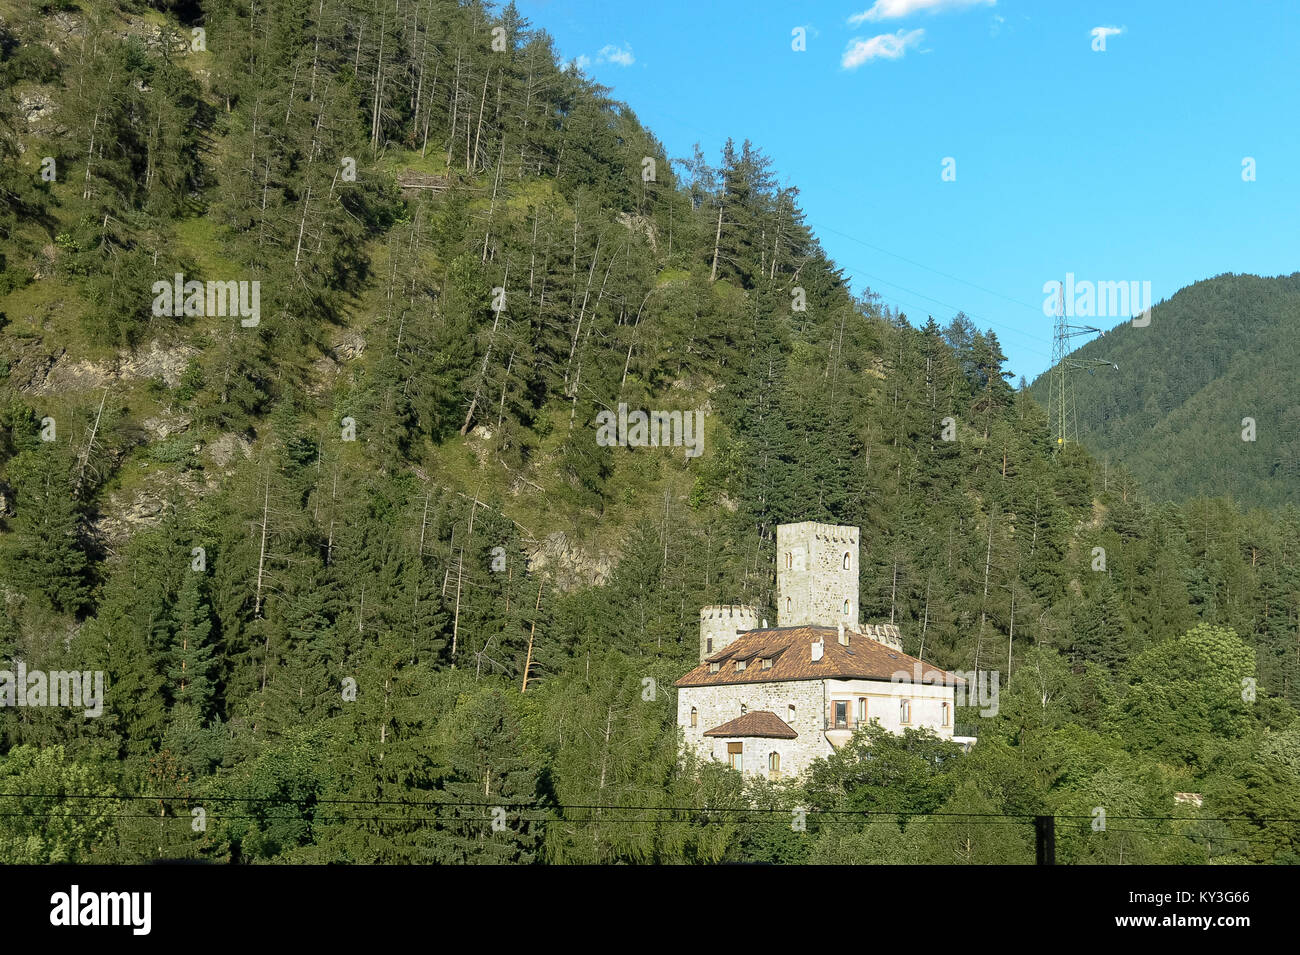 Romanesque Castel Guelfo (Burg Welfenstein) in Campo di Trens/Freienfeld, Trentino-Alto Adige, Italy. 8 August 2016 © Wojciech Strozyk / Alamy Stock P Stock Photo